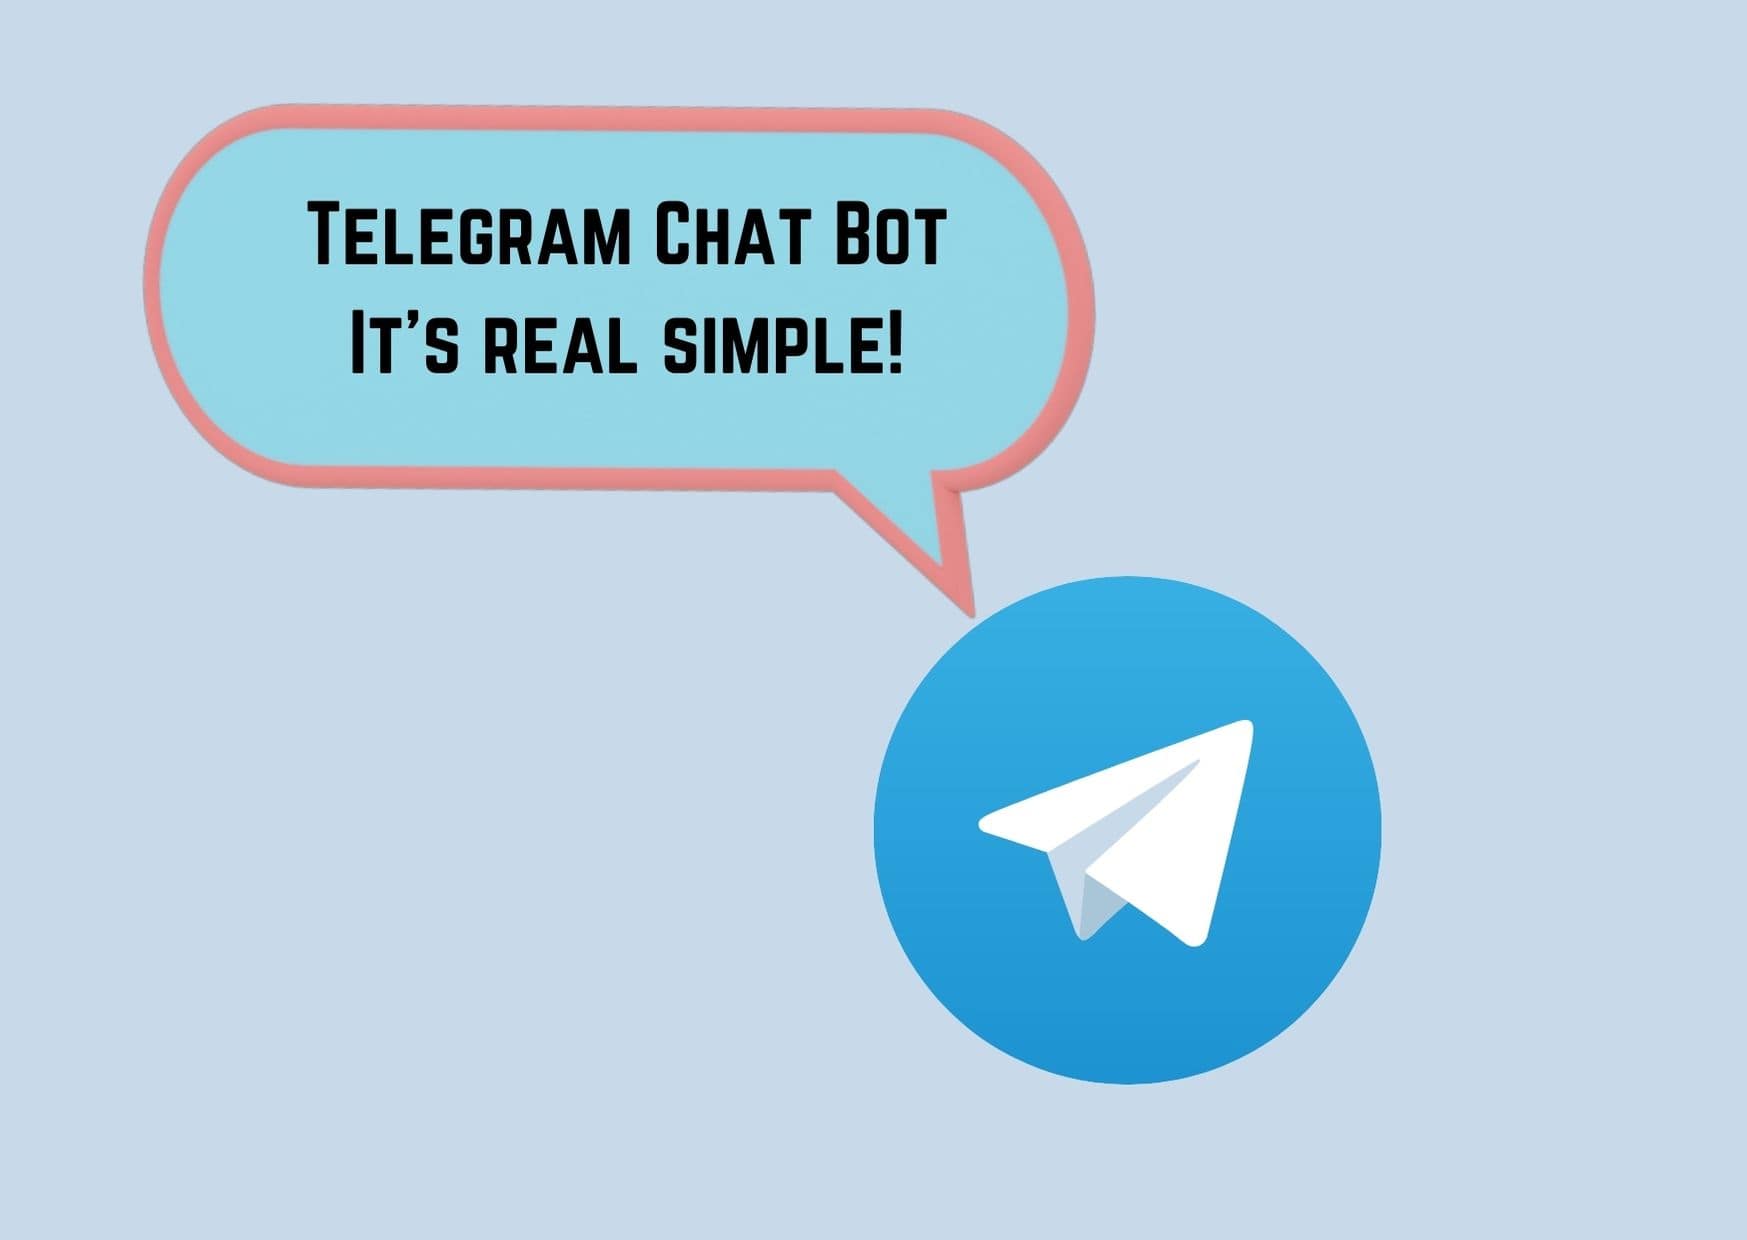 Building a telegram bot